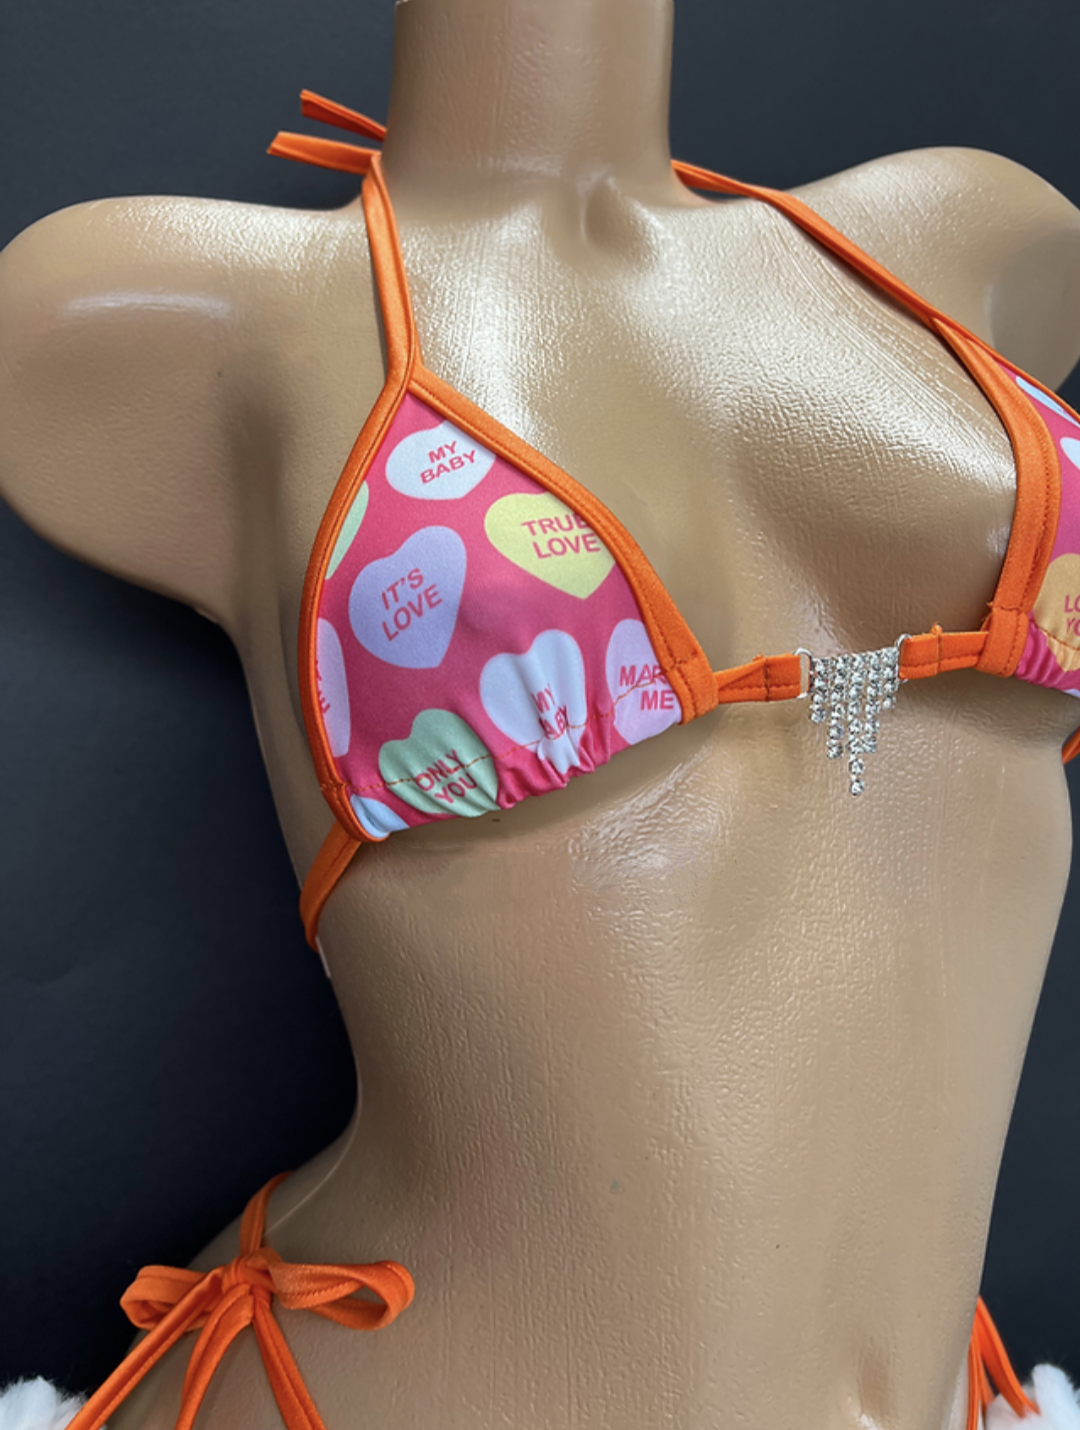 Candy Hearts Bikini With Pom Poms (Size S/M)